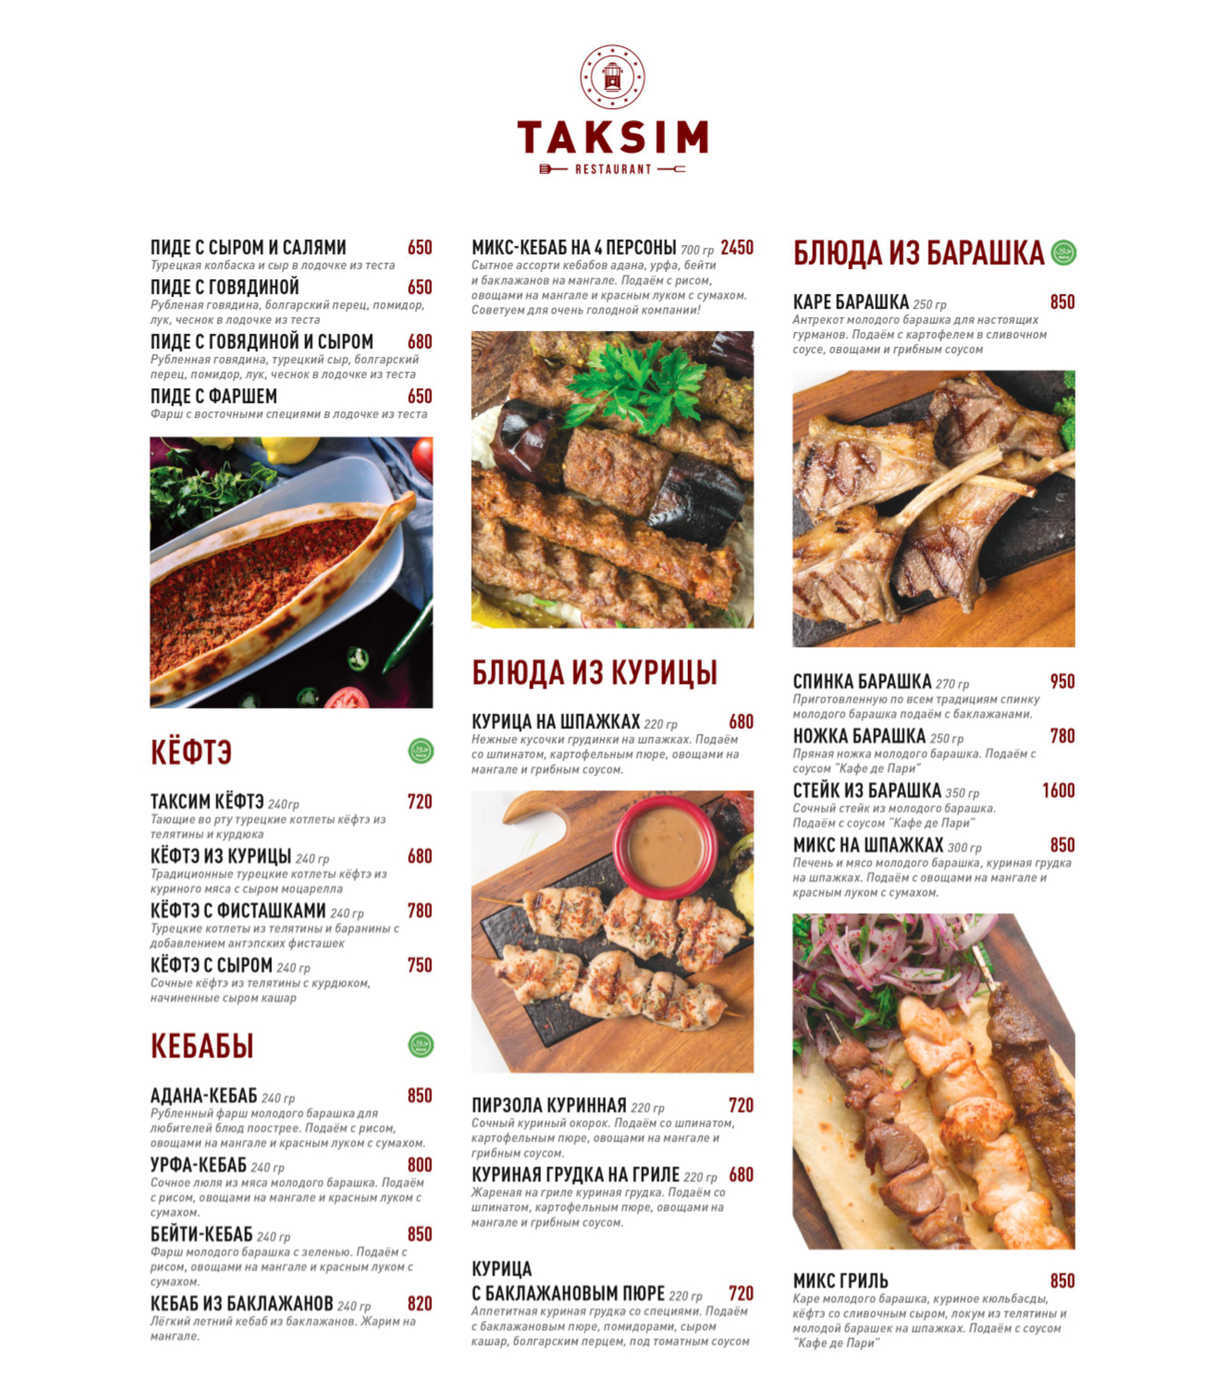 Турецкий ресторан меню. Taksim ресторан Арбат. Турецкий ресторан Таксим меню. Ресторан Таксим на Арбате меню.